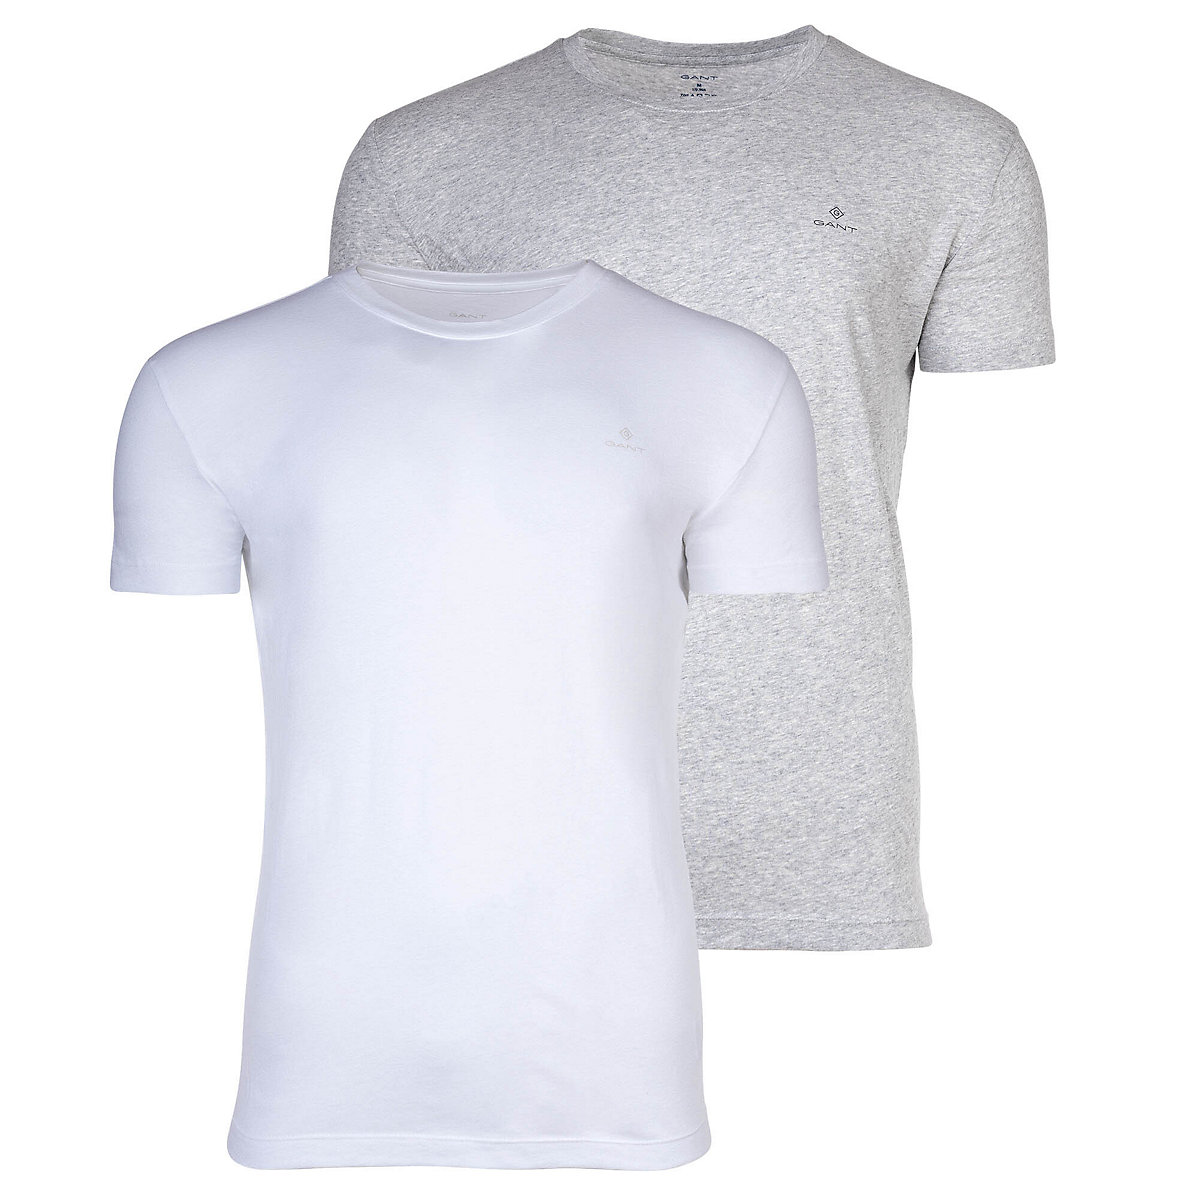 GANT Herren T-Shirt 2er Pack Rundhals Crew Neck kurzarm Baumwolle T-Shirts grau/weiß